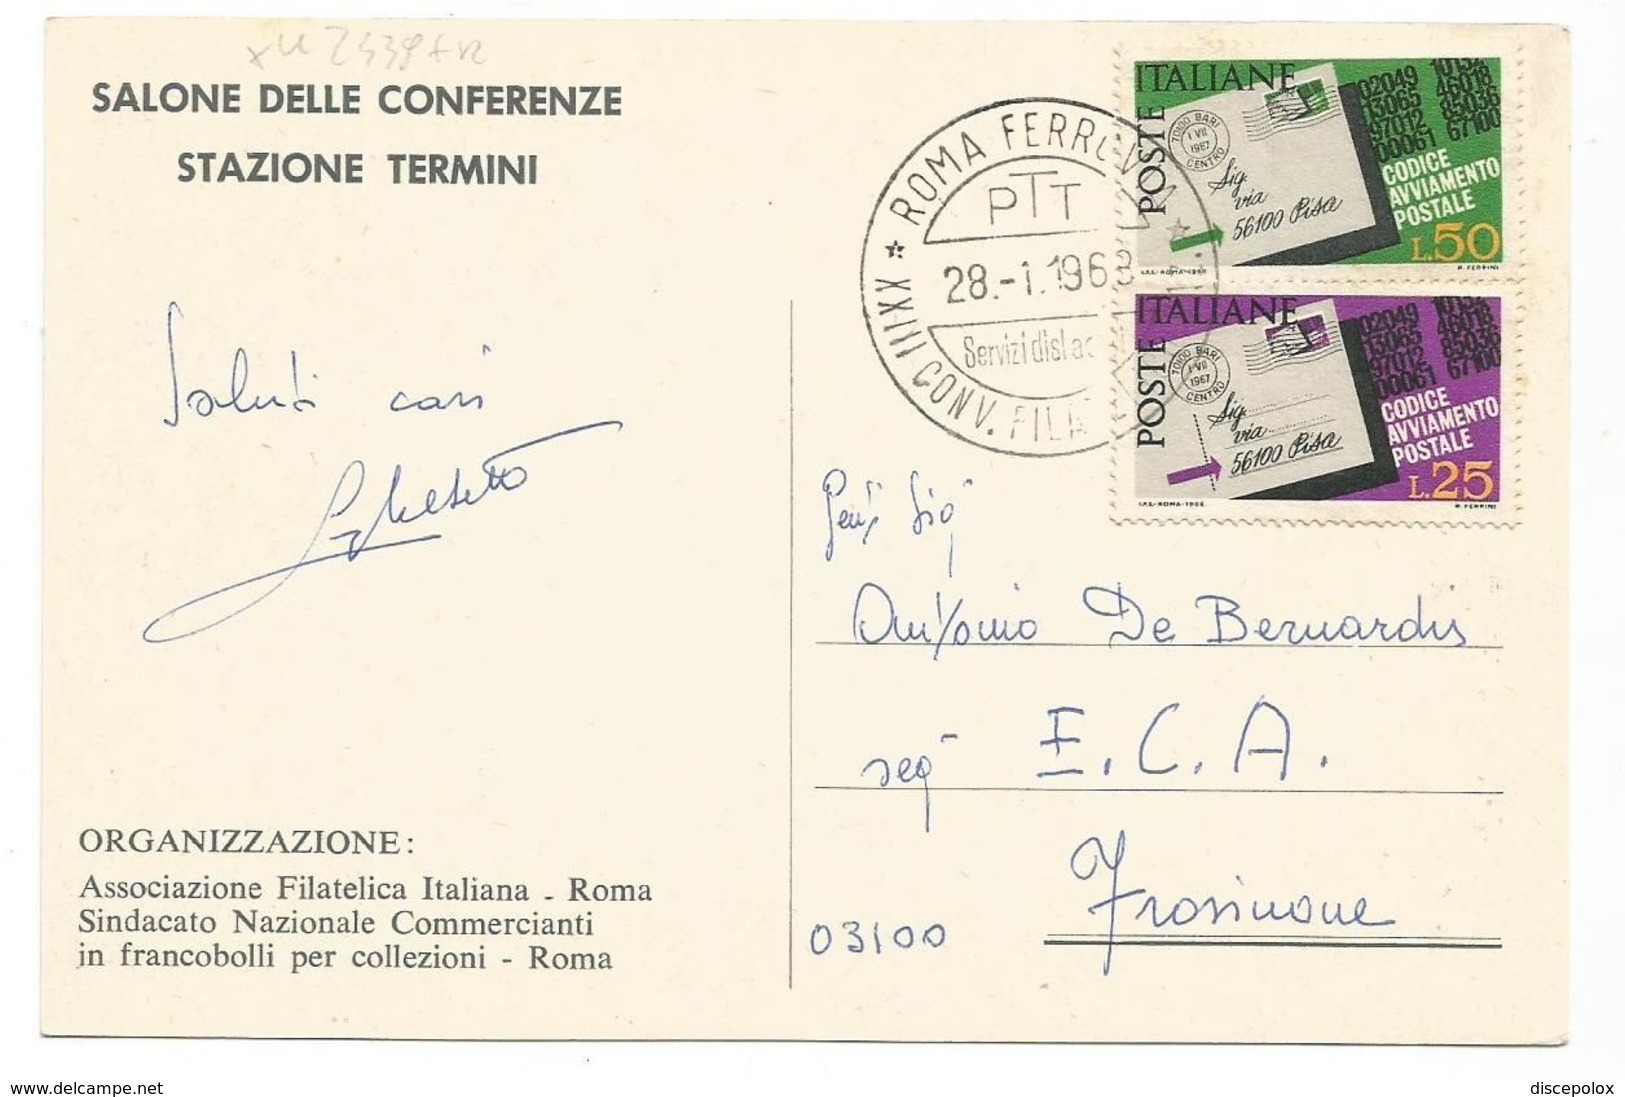 XW 2439 Roma - XXIII Convegno Filatelico Nazionale 1968 - Stazione Termini - Annullo Commemorativo - Ausstellungen